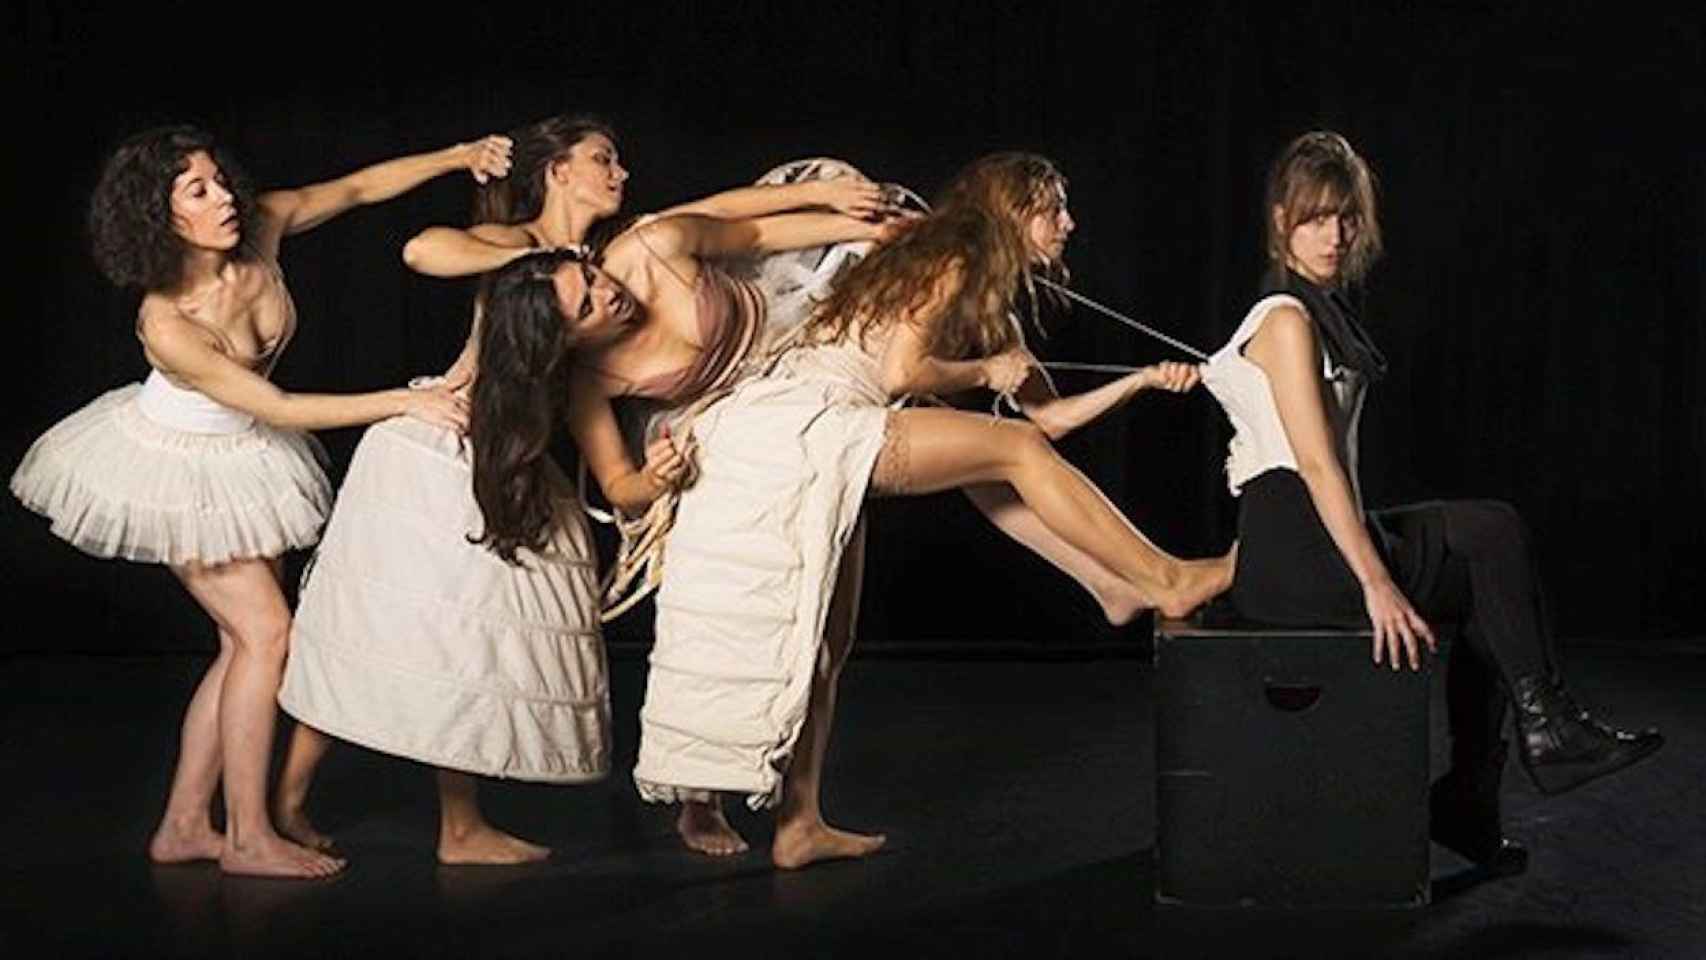 Imagen promocional de la obra con la que abre el Teatre Maldà / MALDÀ